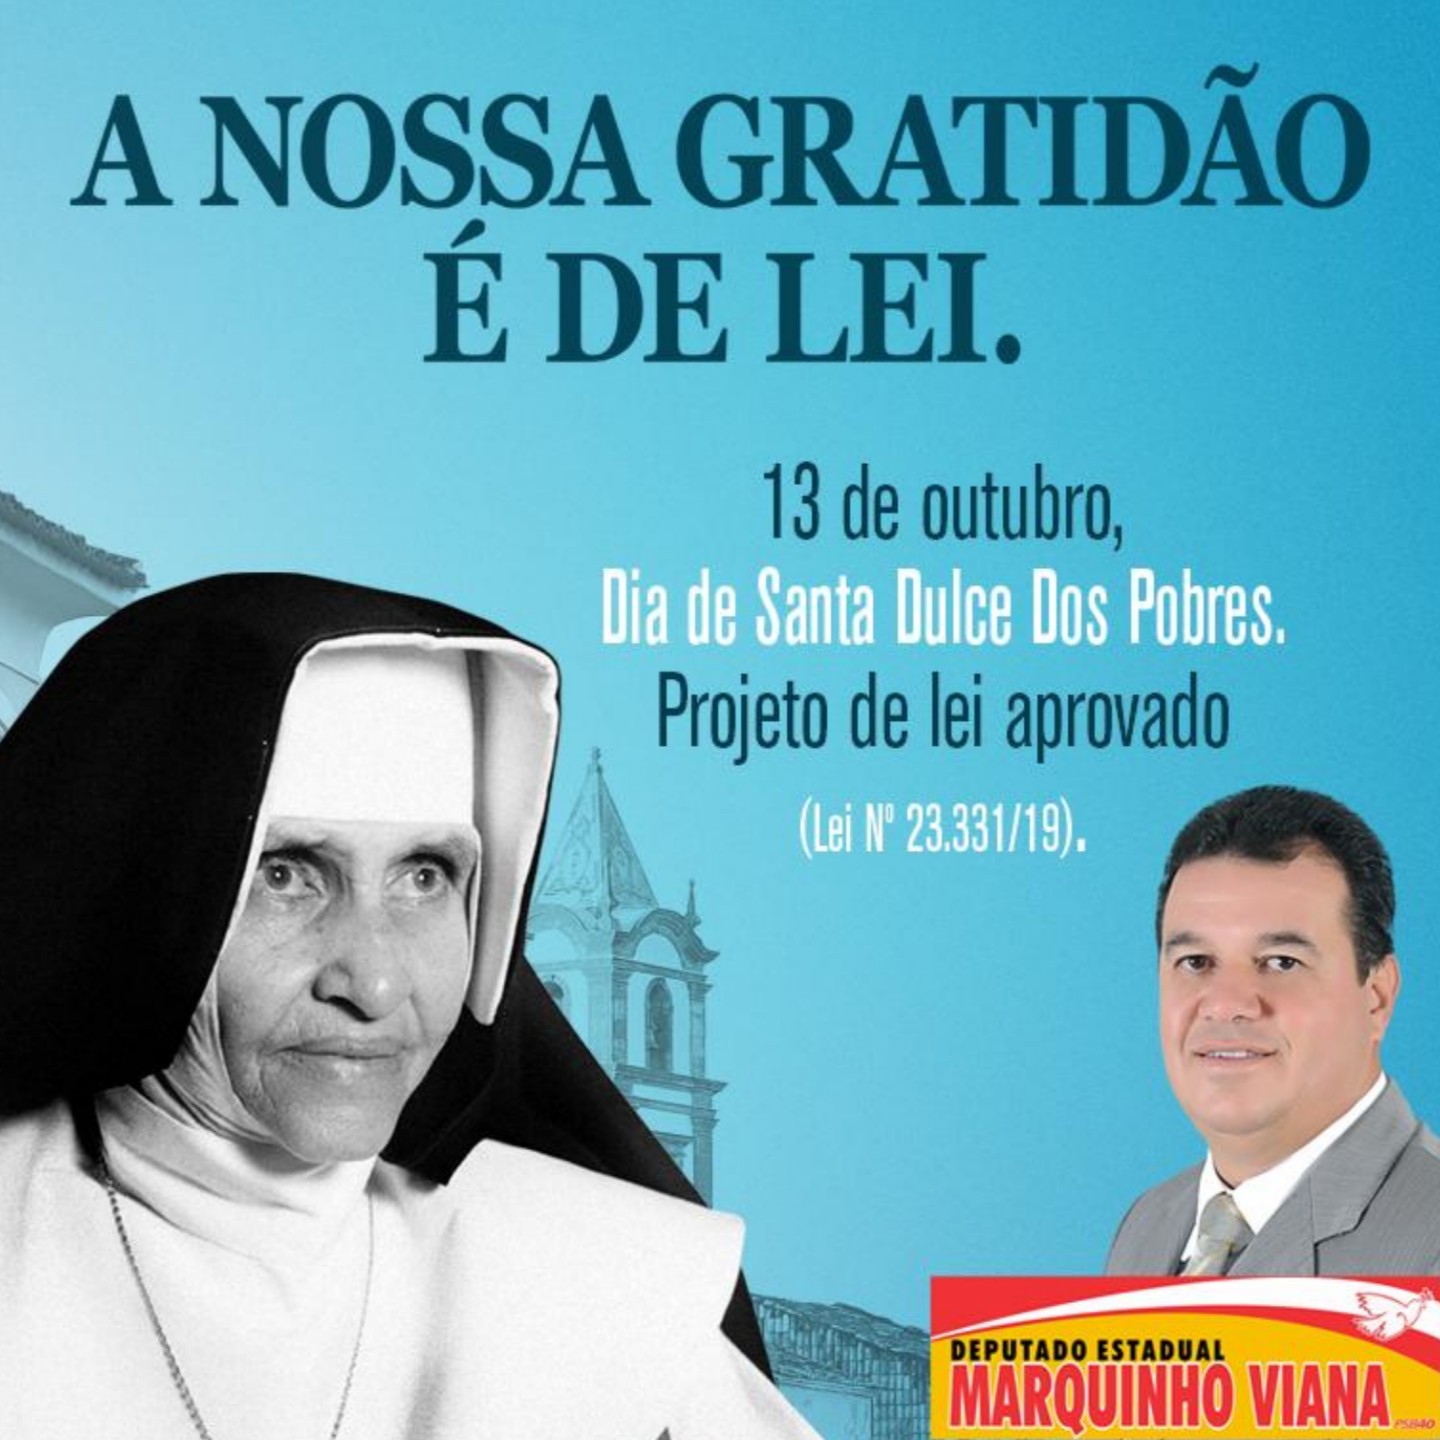    Projeto de Lei de autoria de Marquinho Viana institui 13 de outubro Dia da Santa Irmã Dulce dos Pobres